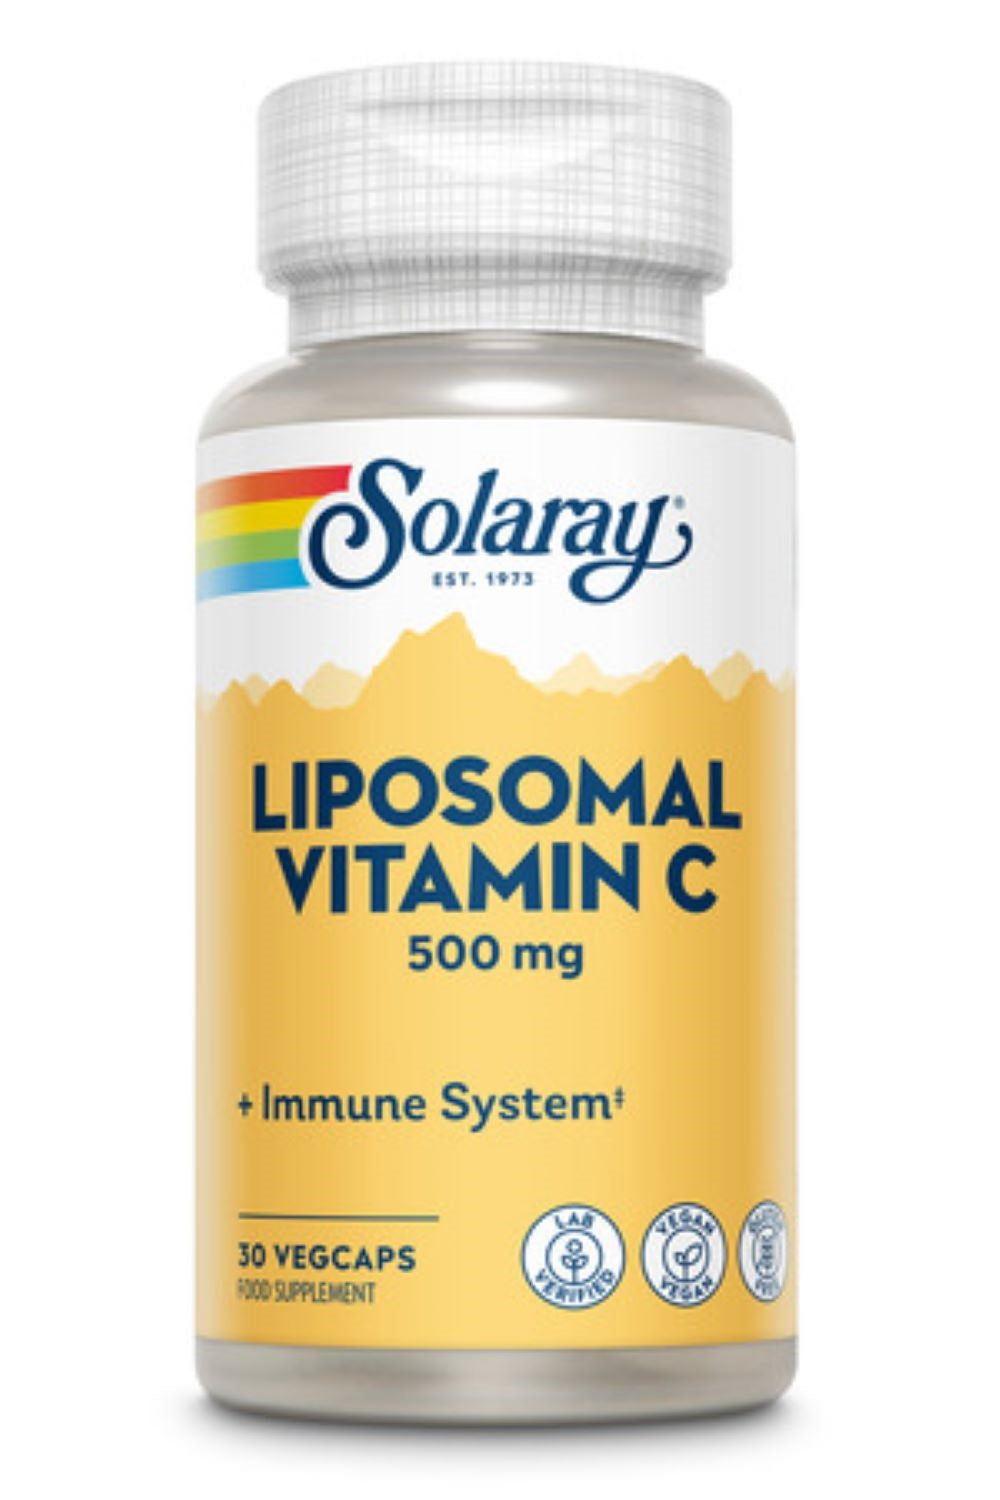 Solaray liposomale vitamine c- 500 mg, 30 veg-caps